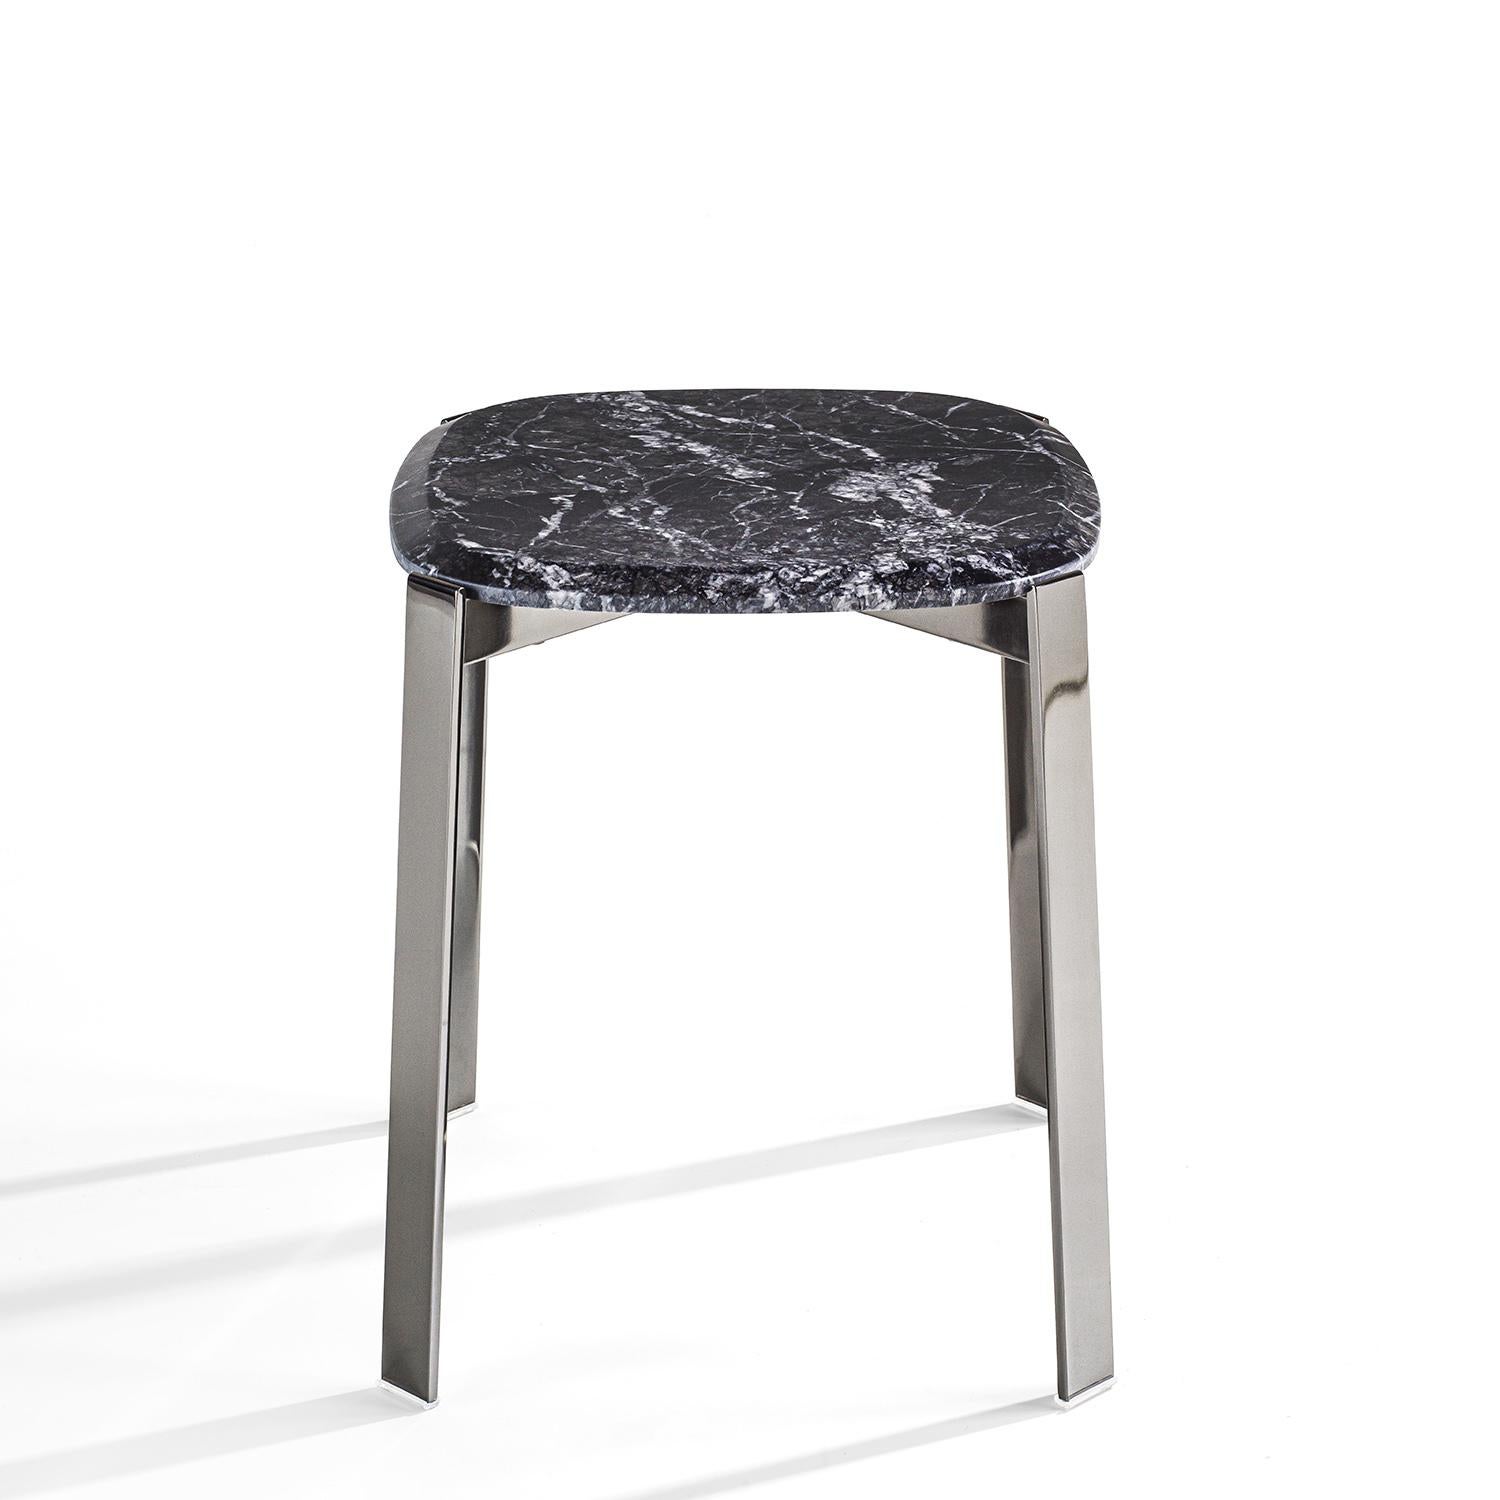 Table d'appoint Peters noir en métal chromé
structure et avec un plan en marbre gris carnico.
Egalement disponible en marbre noir sahara ou avec
dessus en marbre blanc calacatta, sur demande.